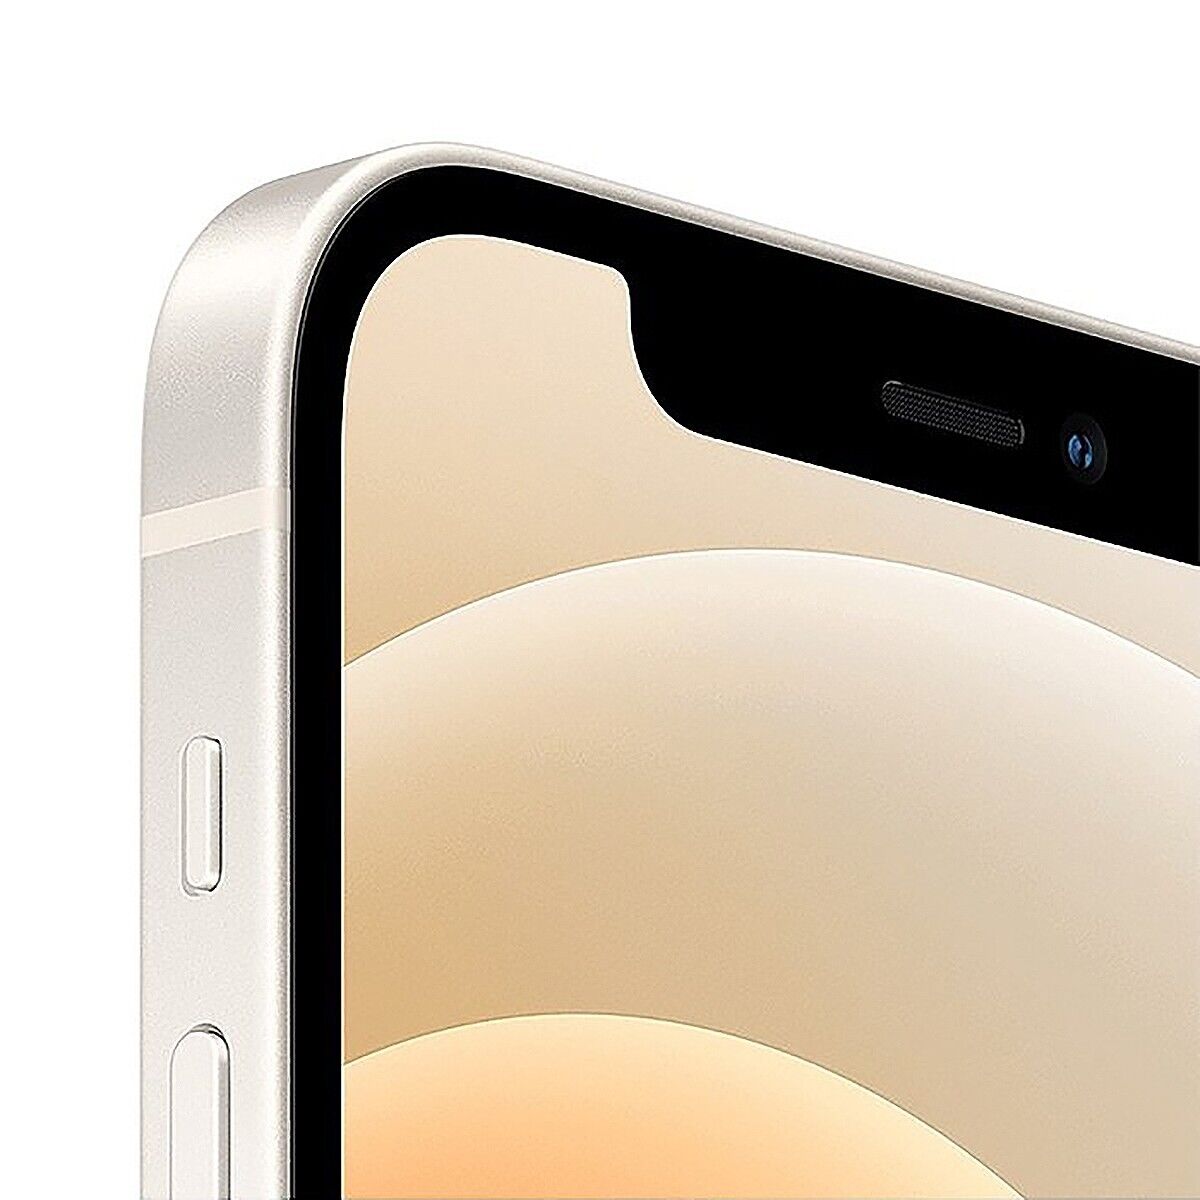 Apple iPhone 12 mini 5G 64GB White Unlocked T-Mobile AT&T Verizon